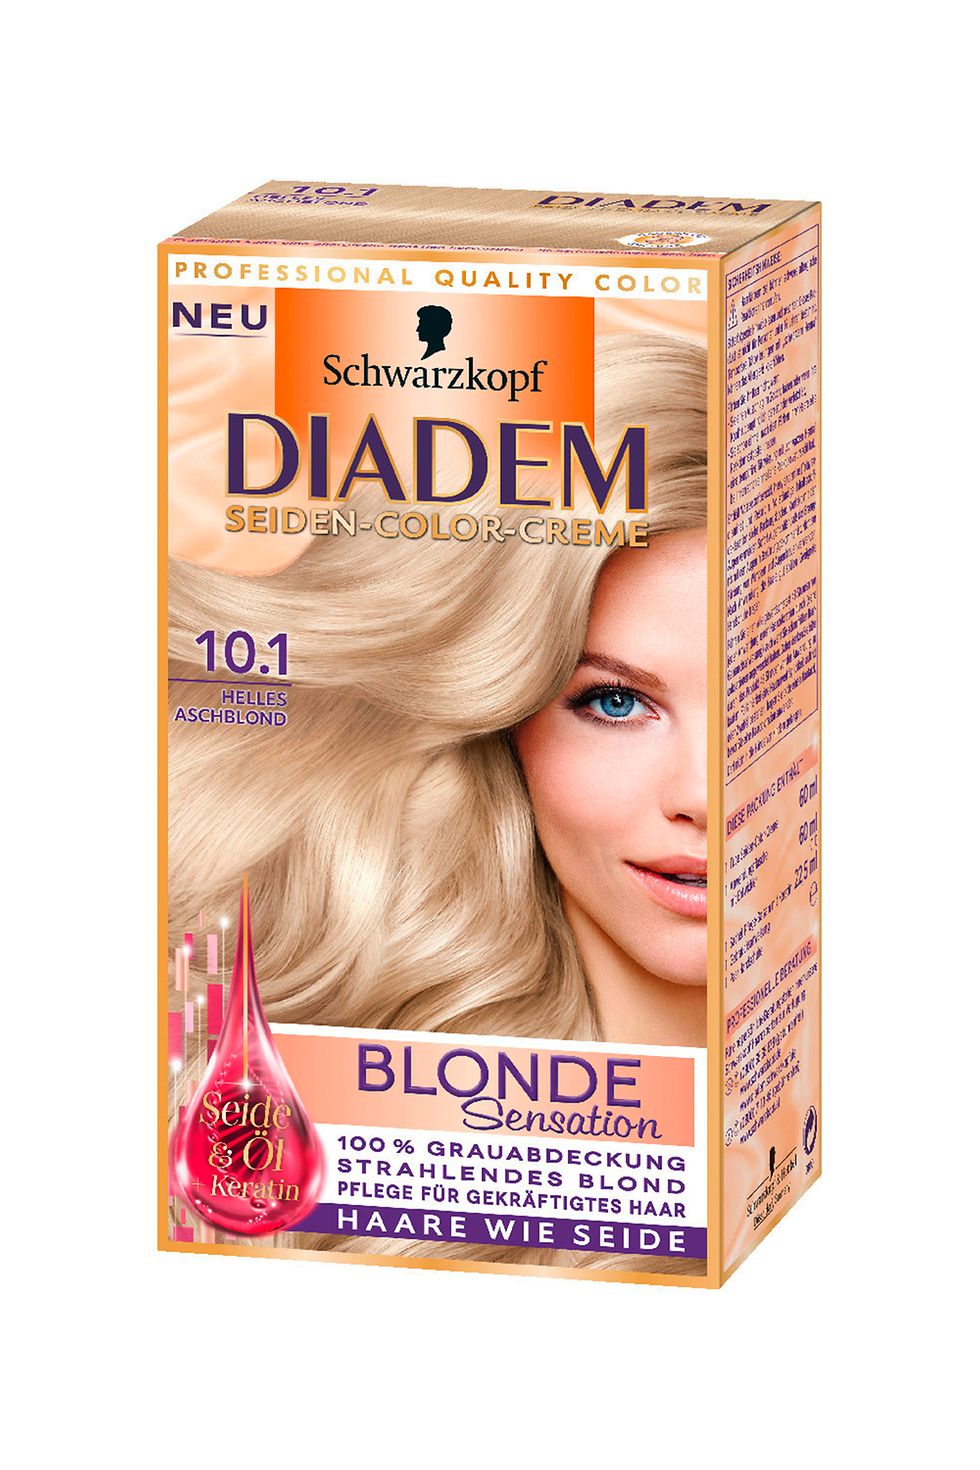 Diadem Seiden-Color-Creme Blonde Sensation 10.1 Helles Aschblond